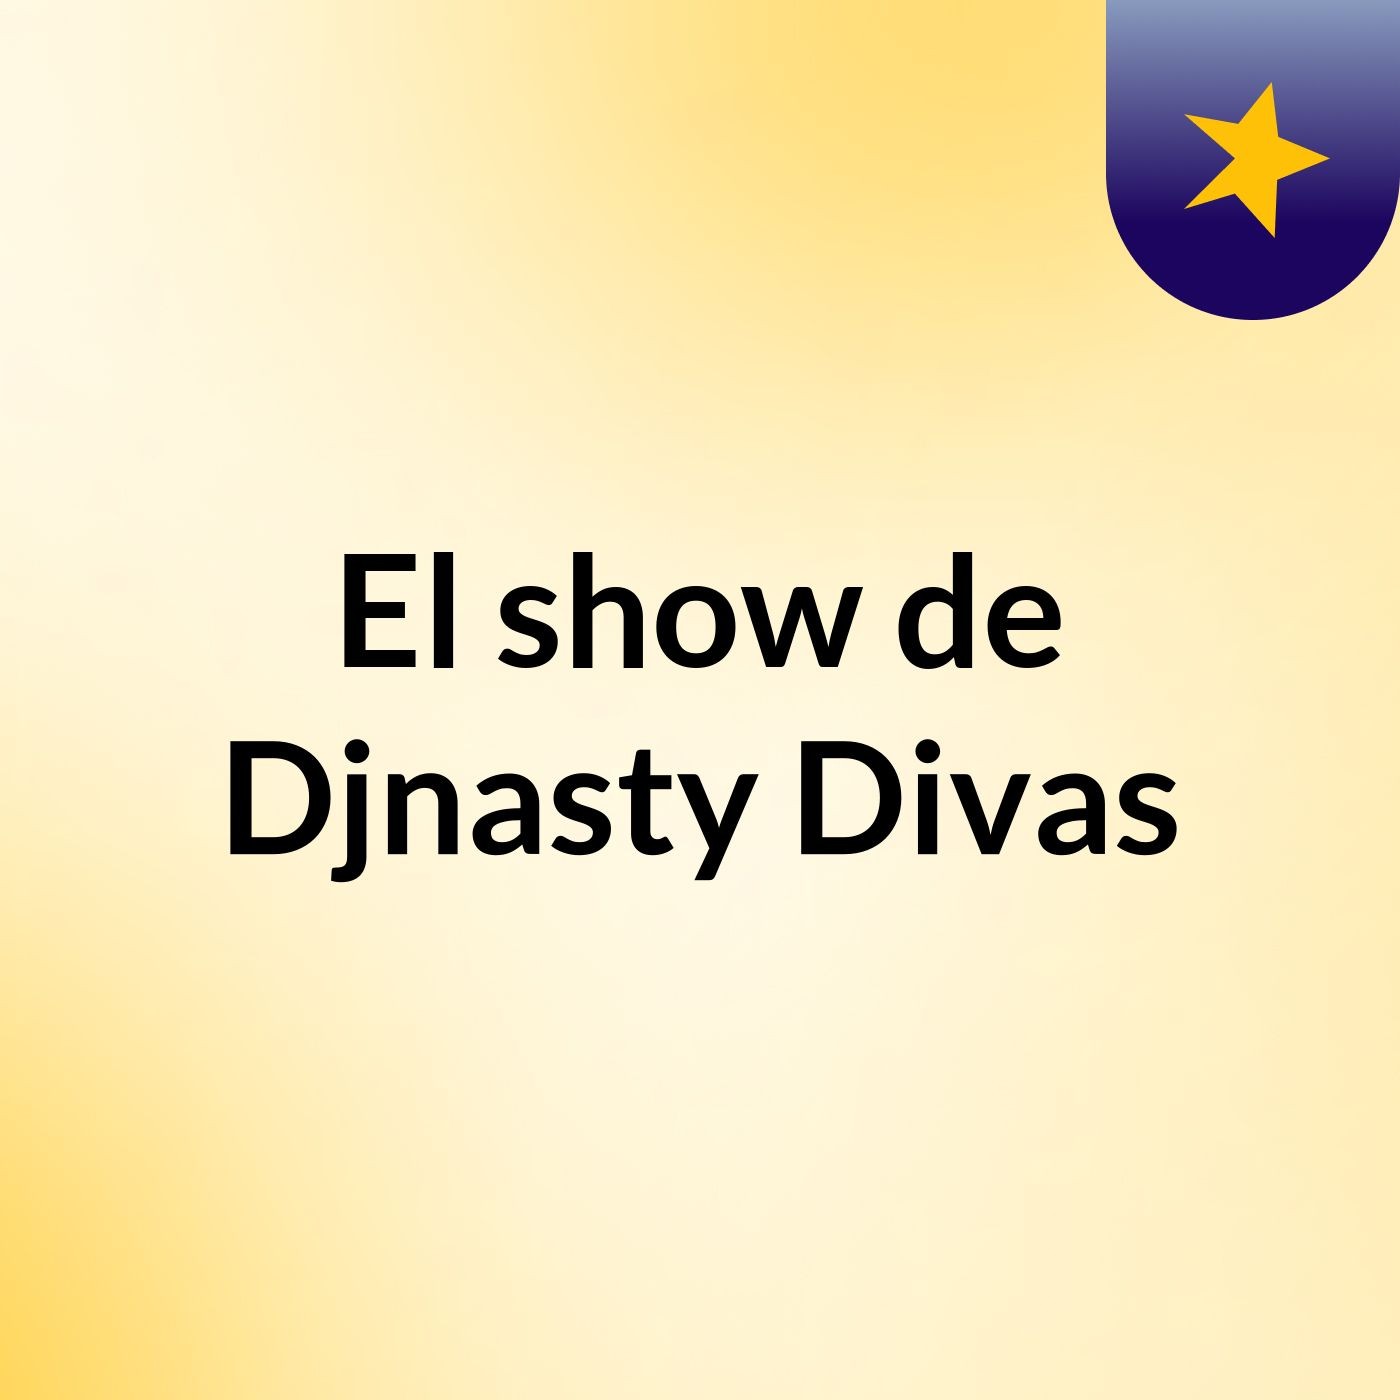 El show de Djnasty Divas